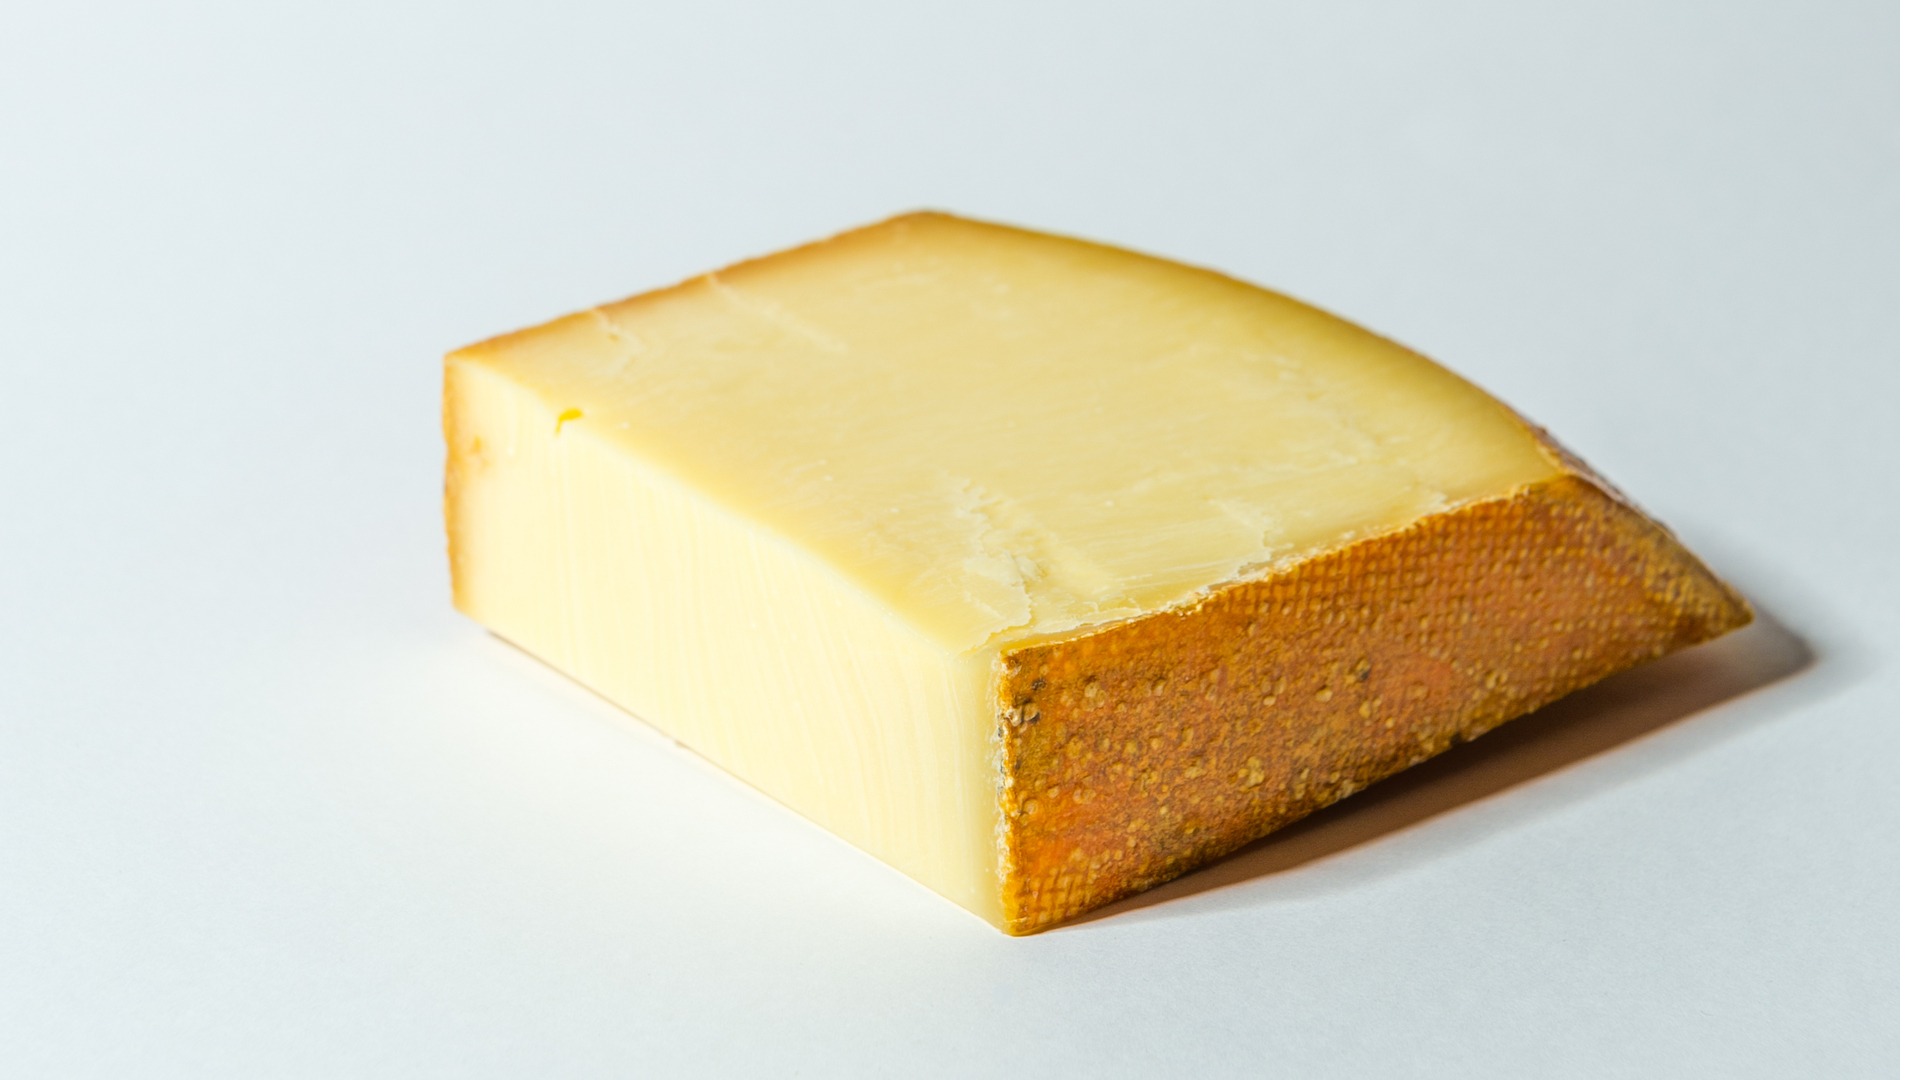 https://chefsmandala.com/cheese-week-appenzeller/